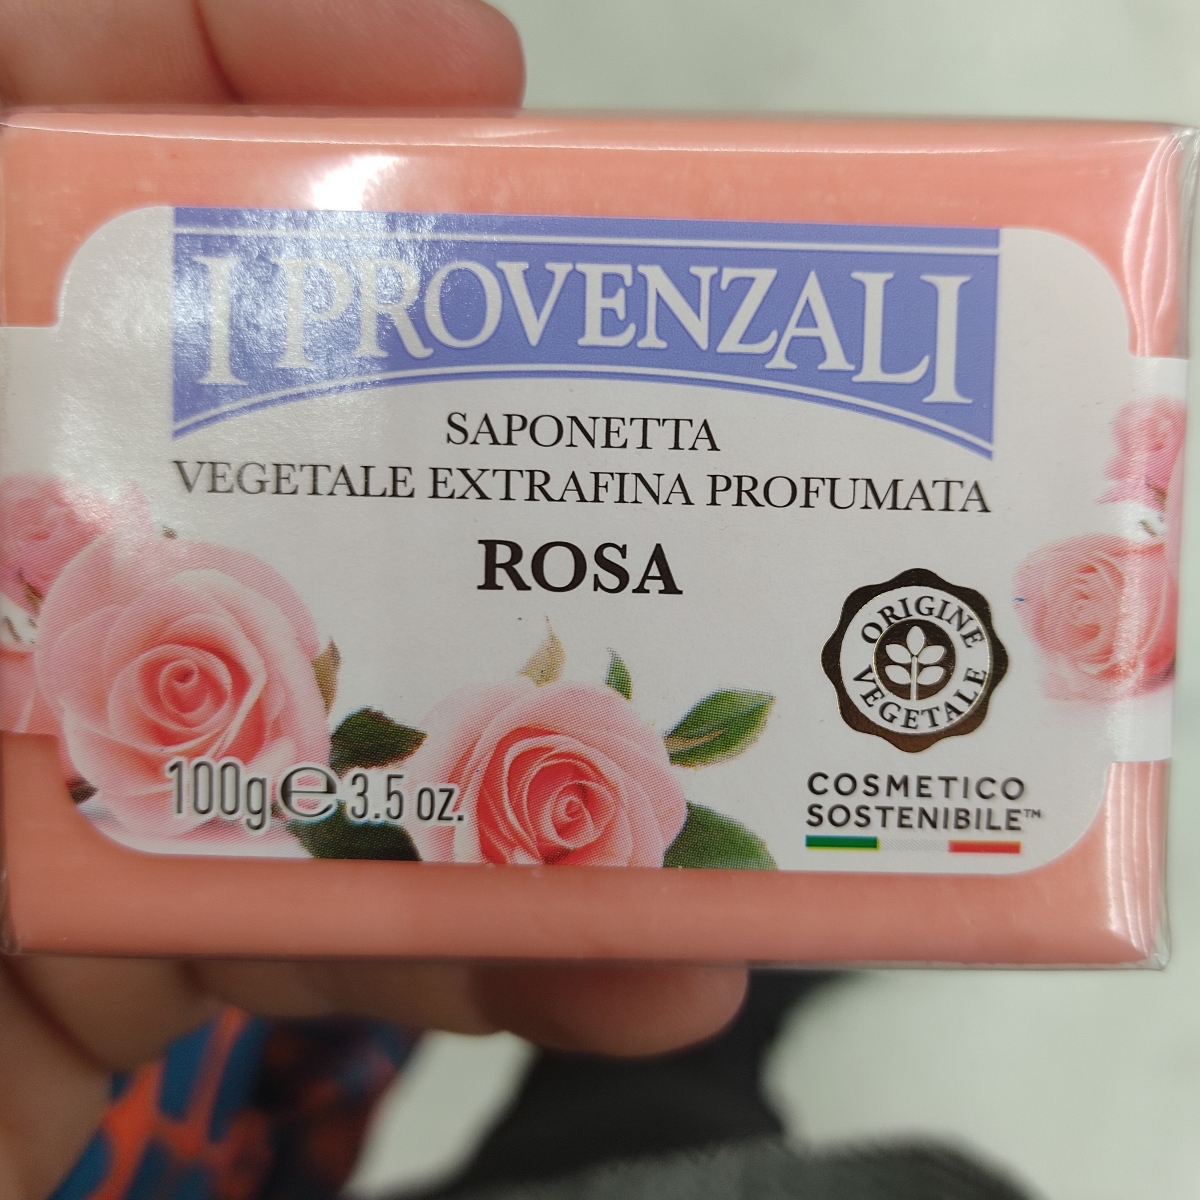 I Provenzali Saponetta rosa Reviews